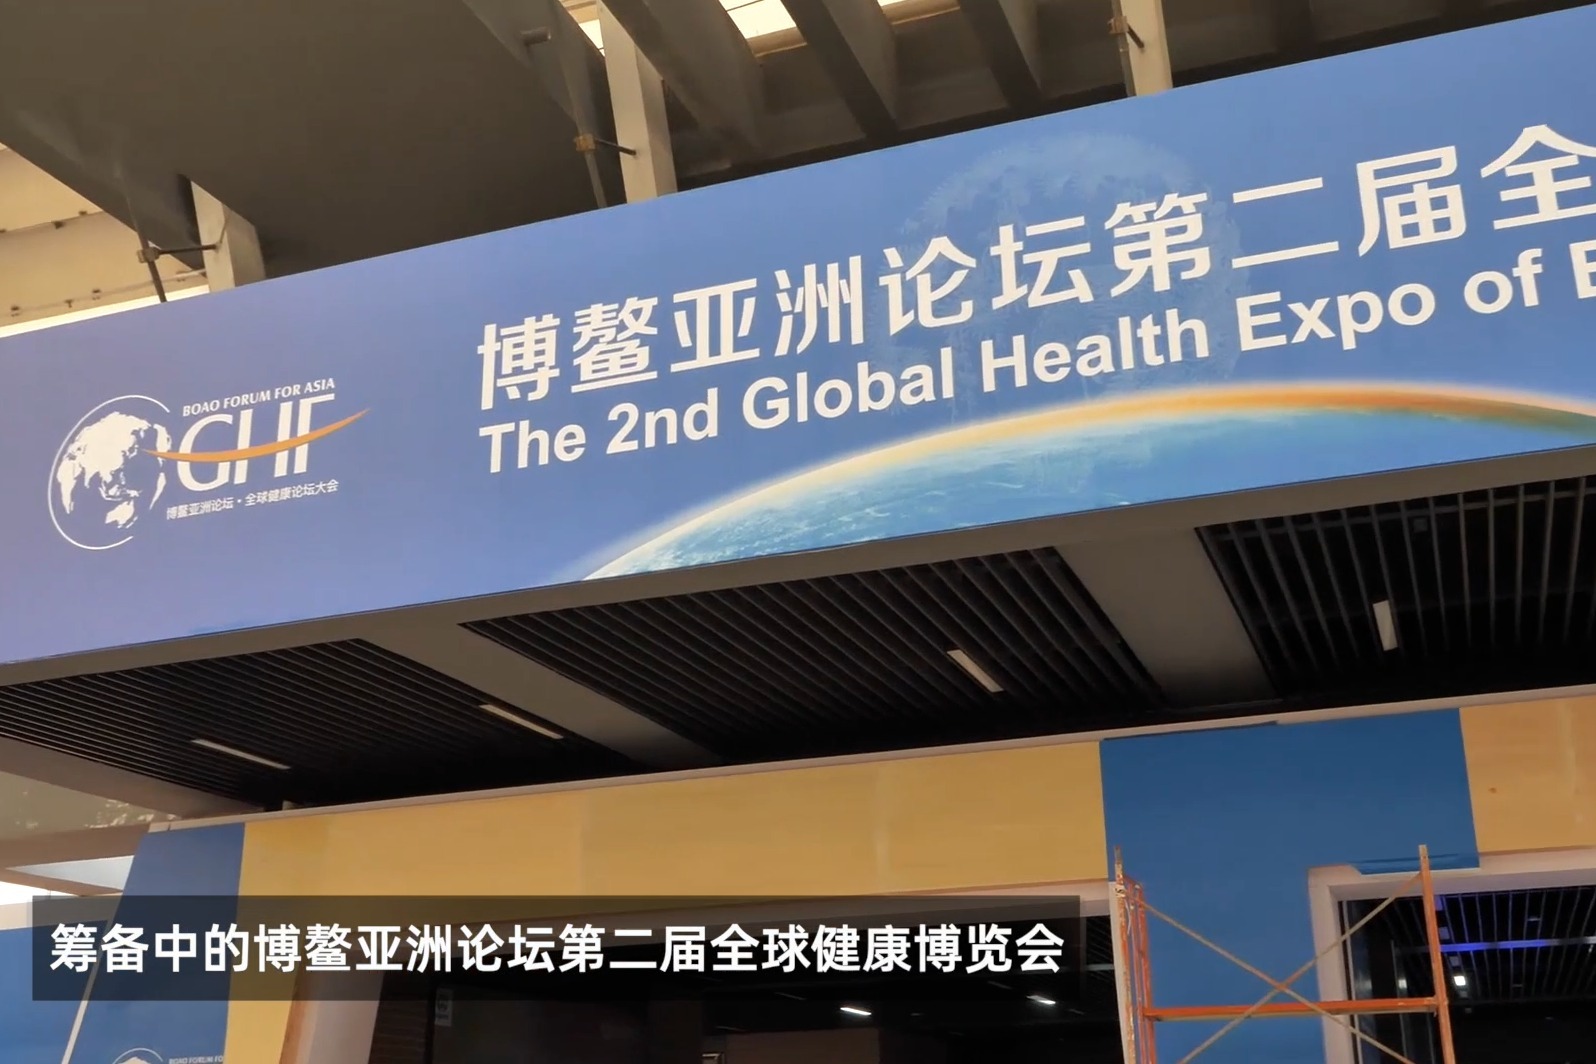 博鳌亚洲论坛第二届全球健康博览会正在积极筹备中！